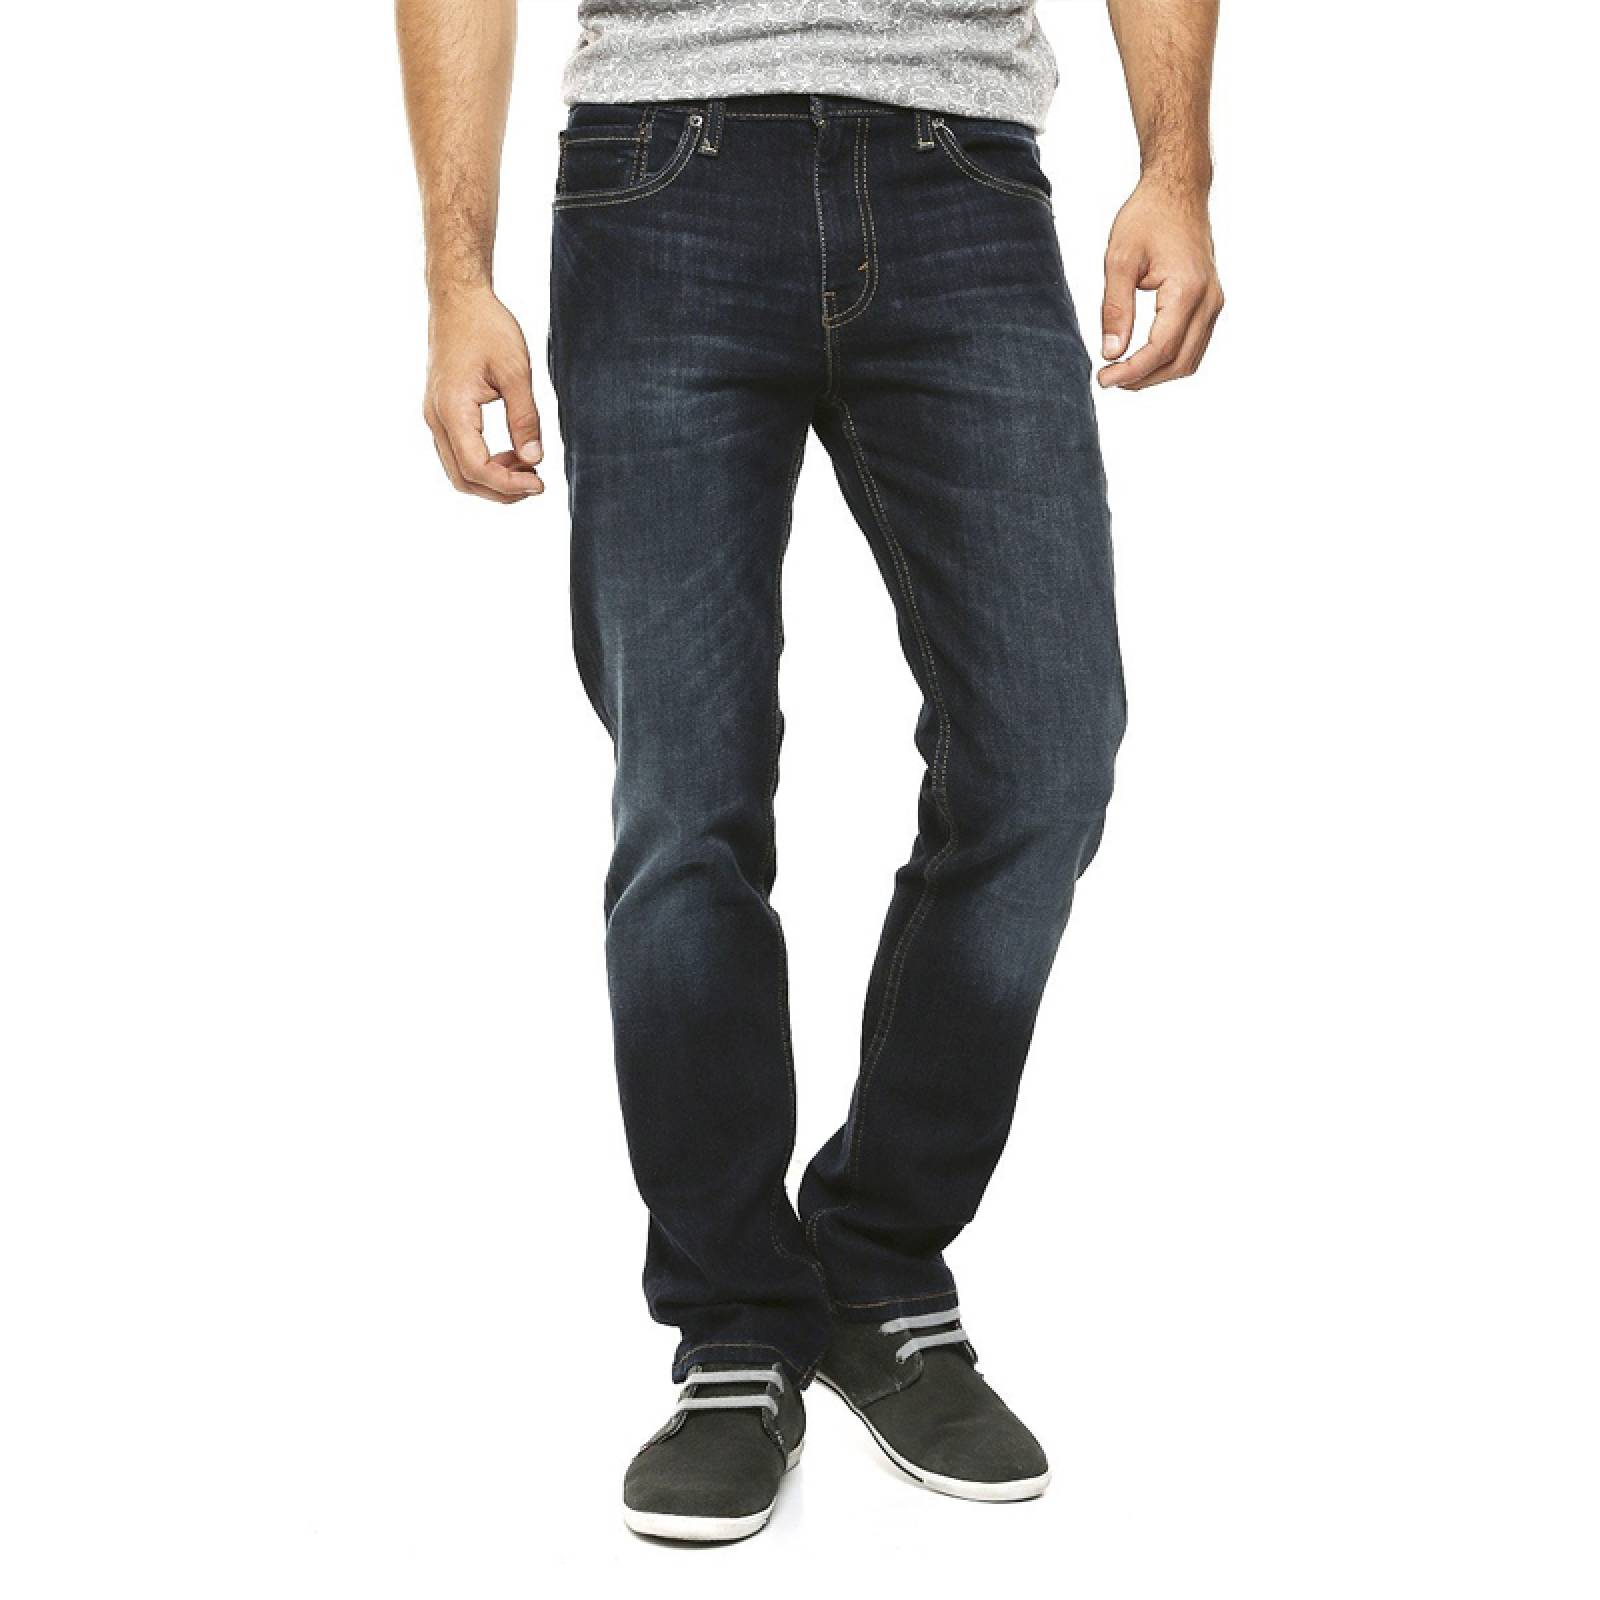 Jeans Levis 511 Slim Fit 045111390